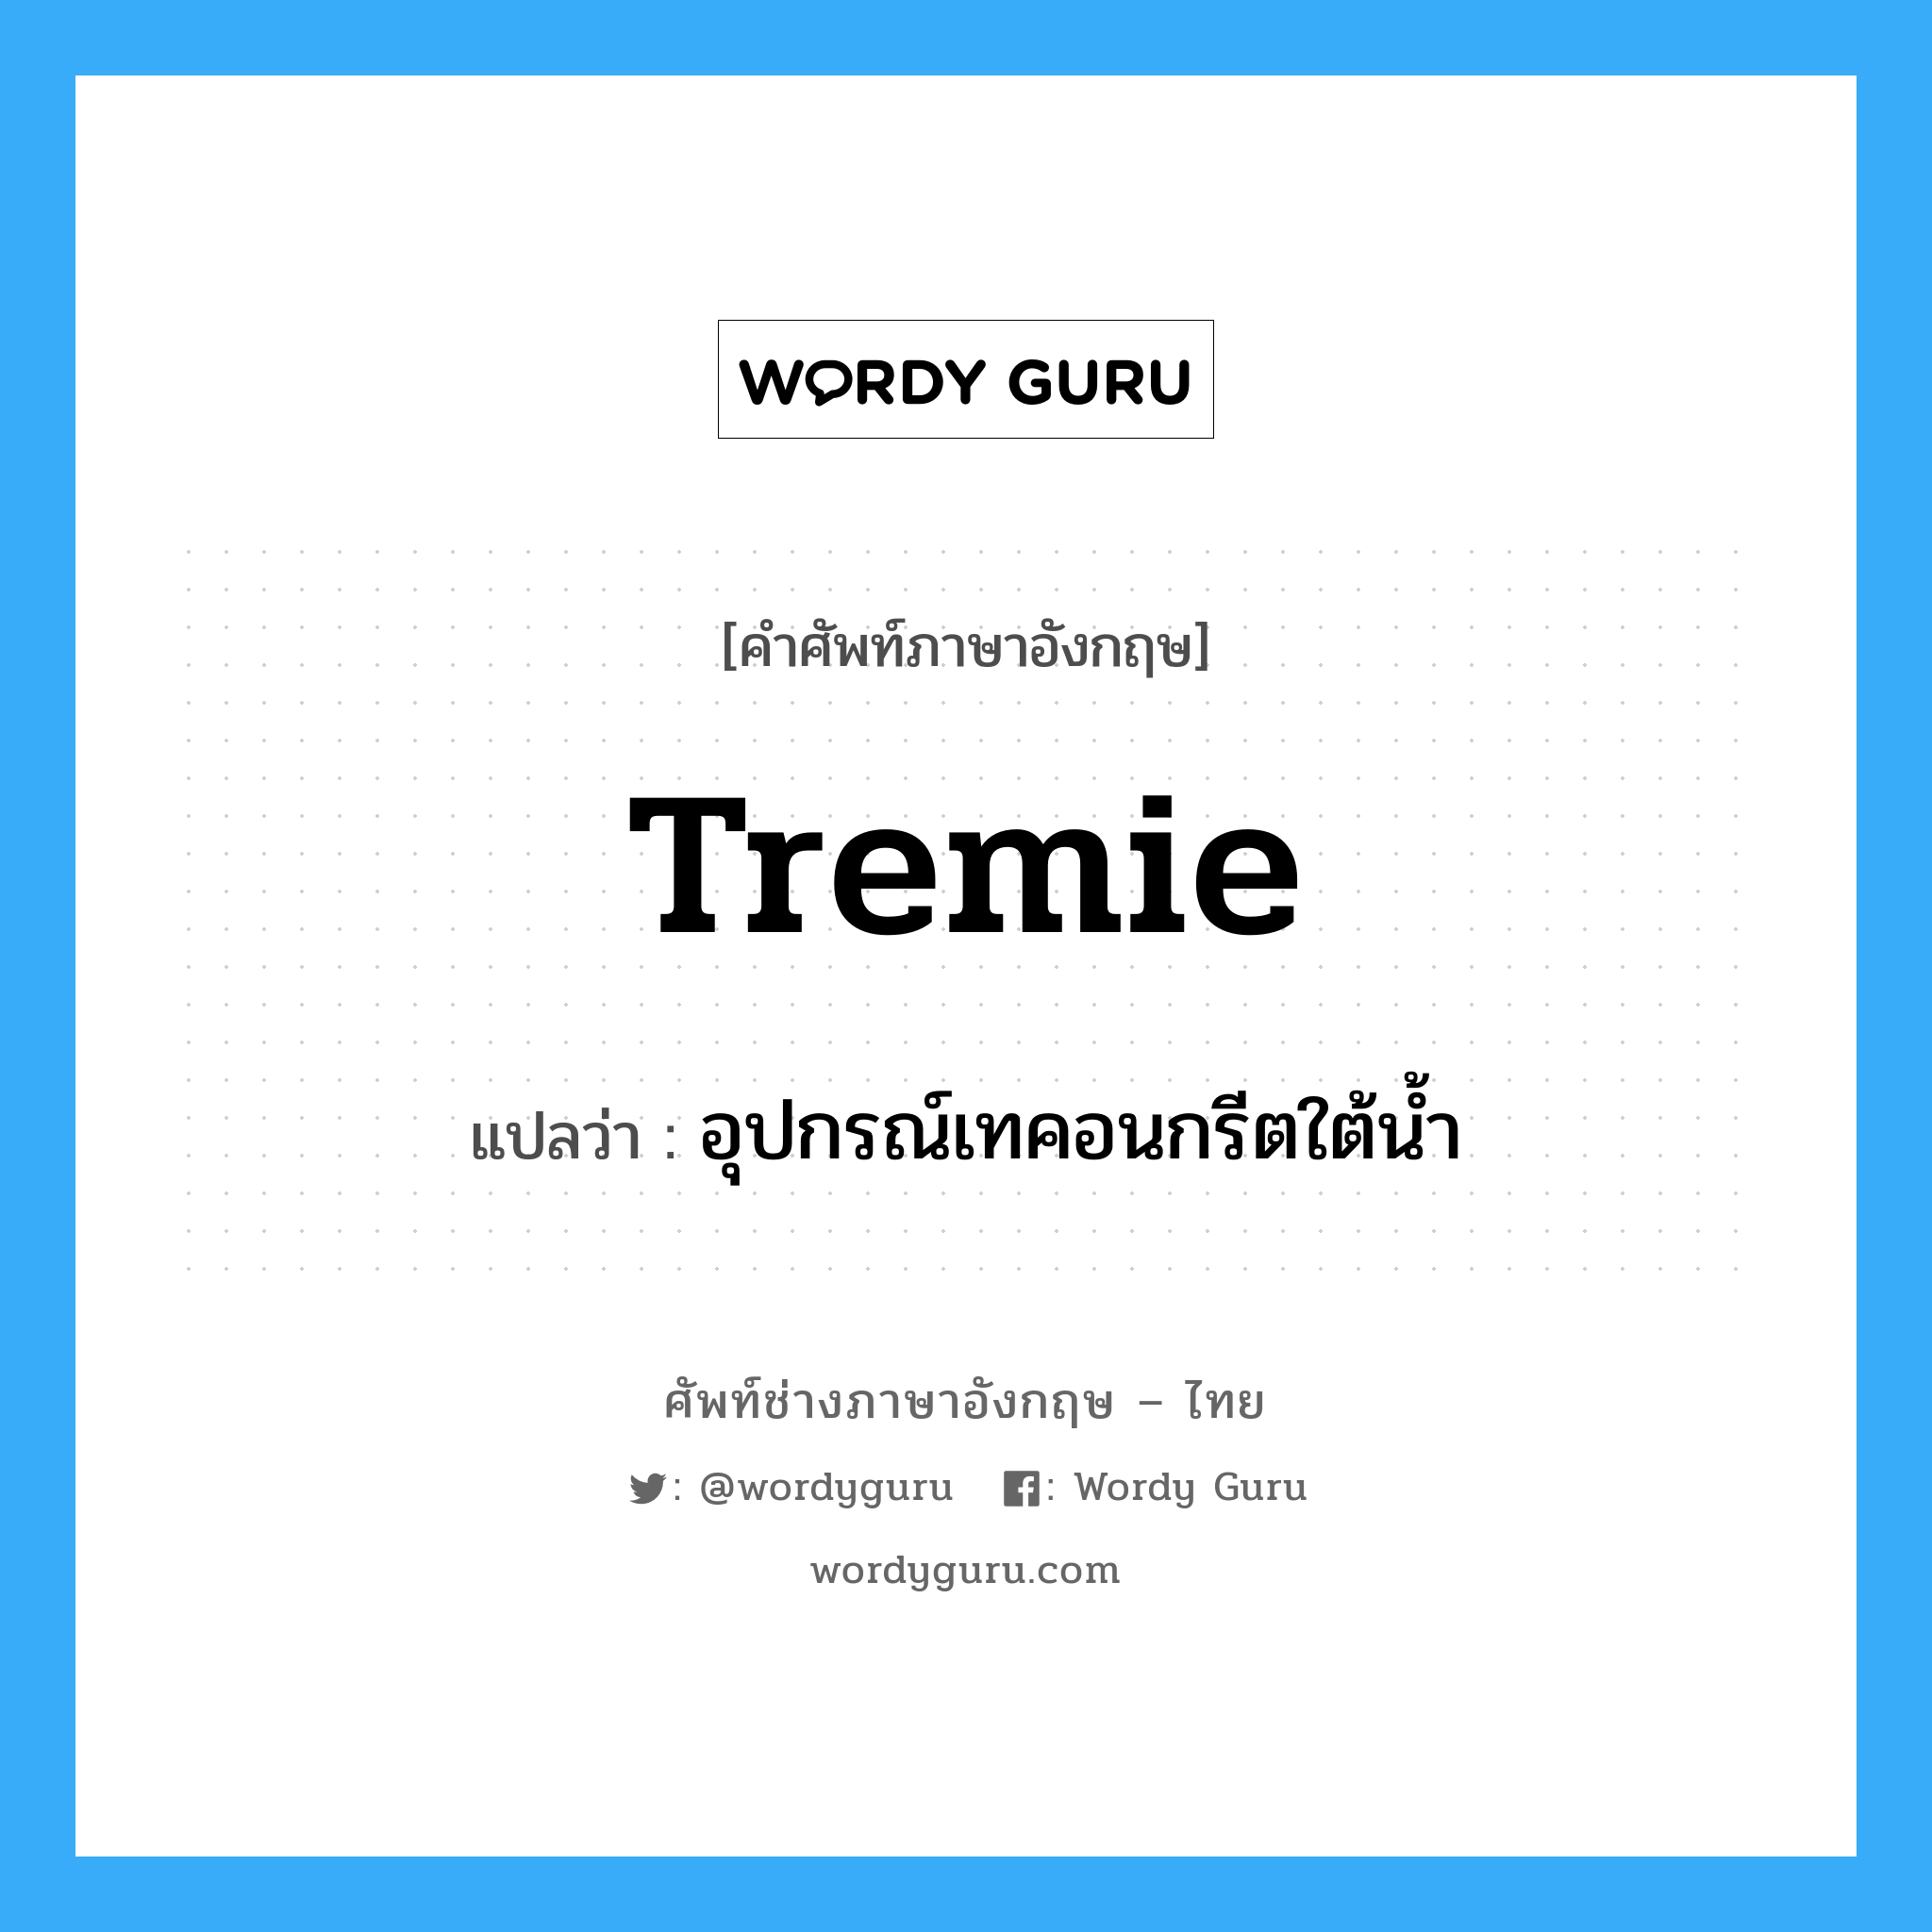 tremie แปลว่า?, คำศัพท์ช่างภาษาอังกฤษ - ไทย tremie คำศัพท์ภาษาอังกฤษ tremie แปลว่า อุปกรณ์เทคอนกรีตใต้น้ำ